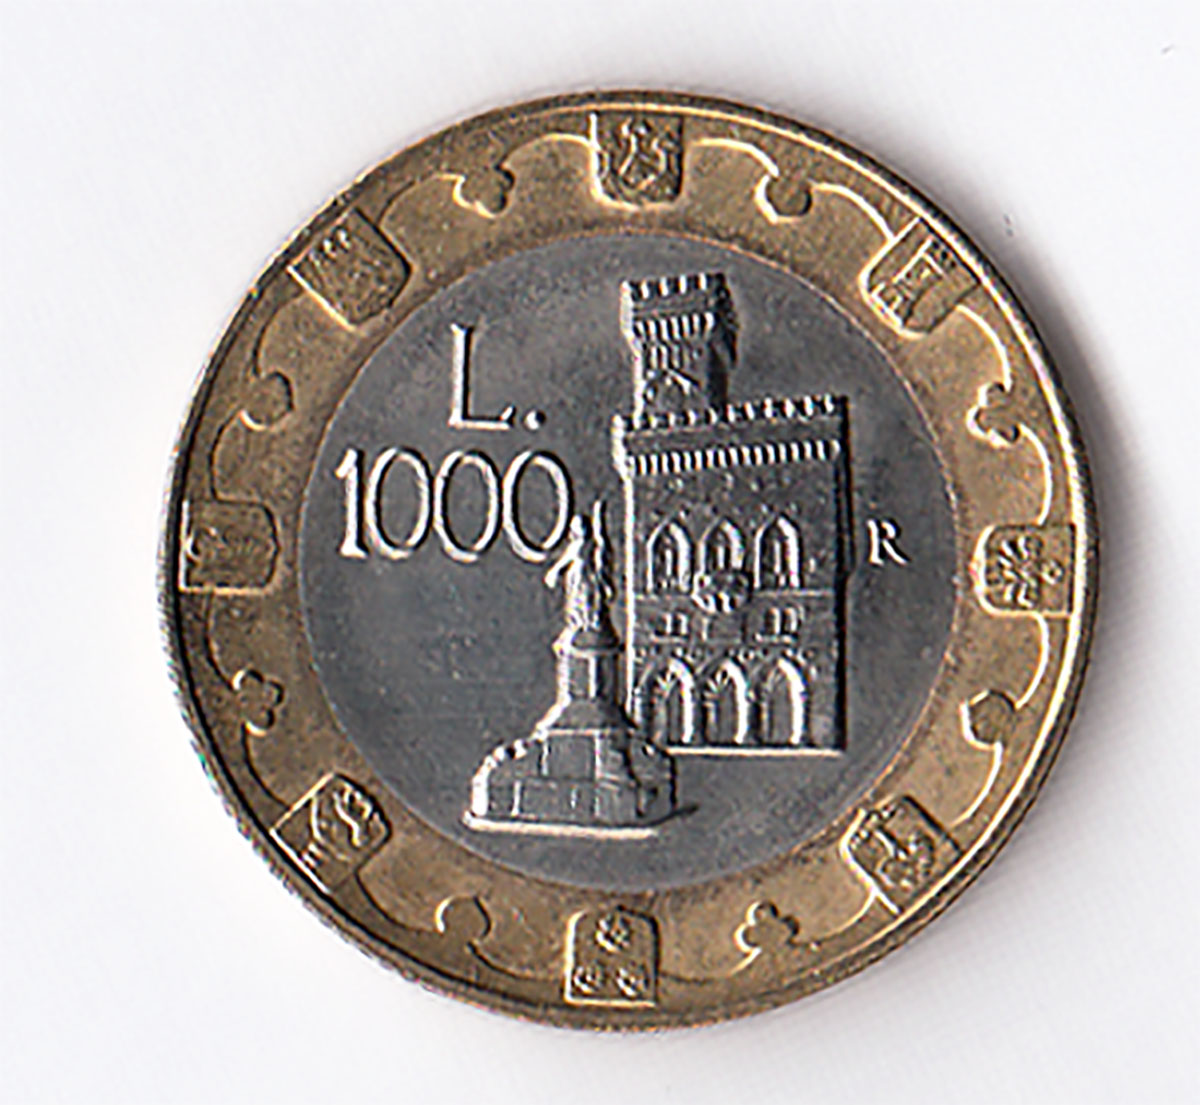 1997 Lire 1000 Bimetallica Fior di Conio San Marino